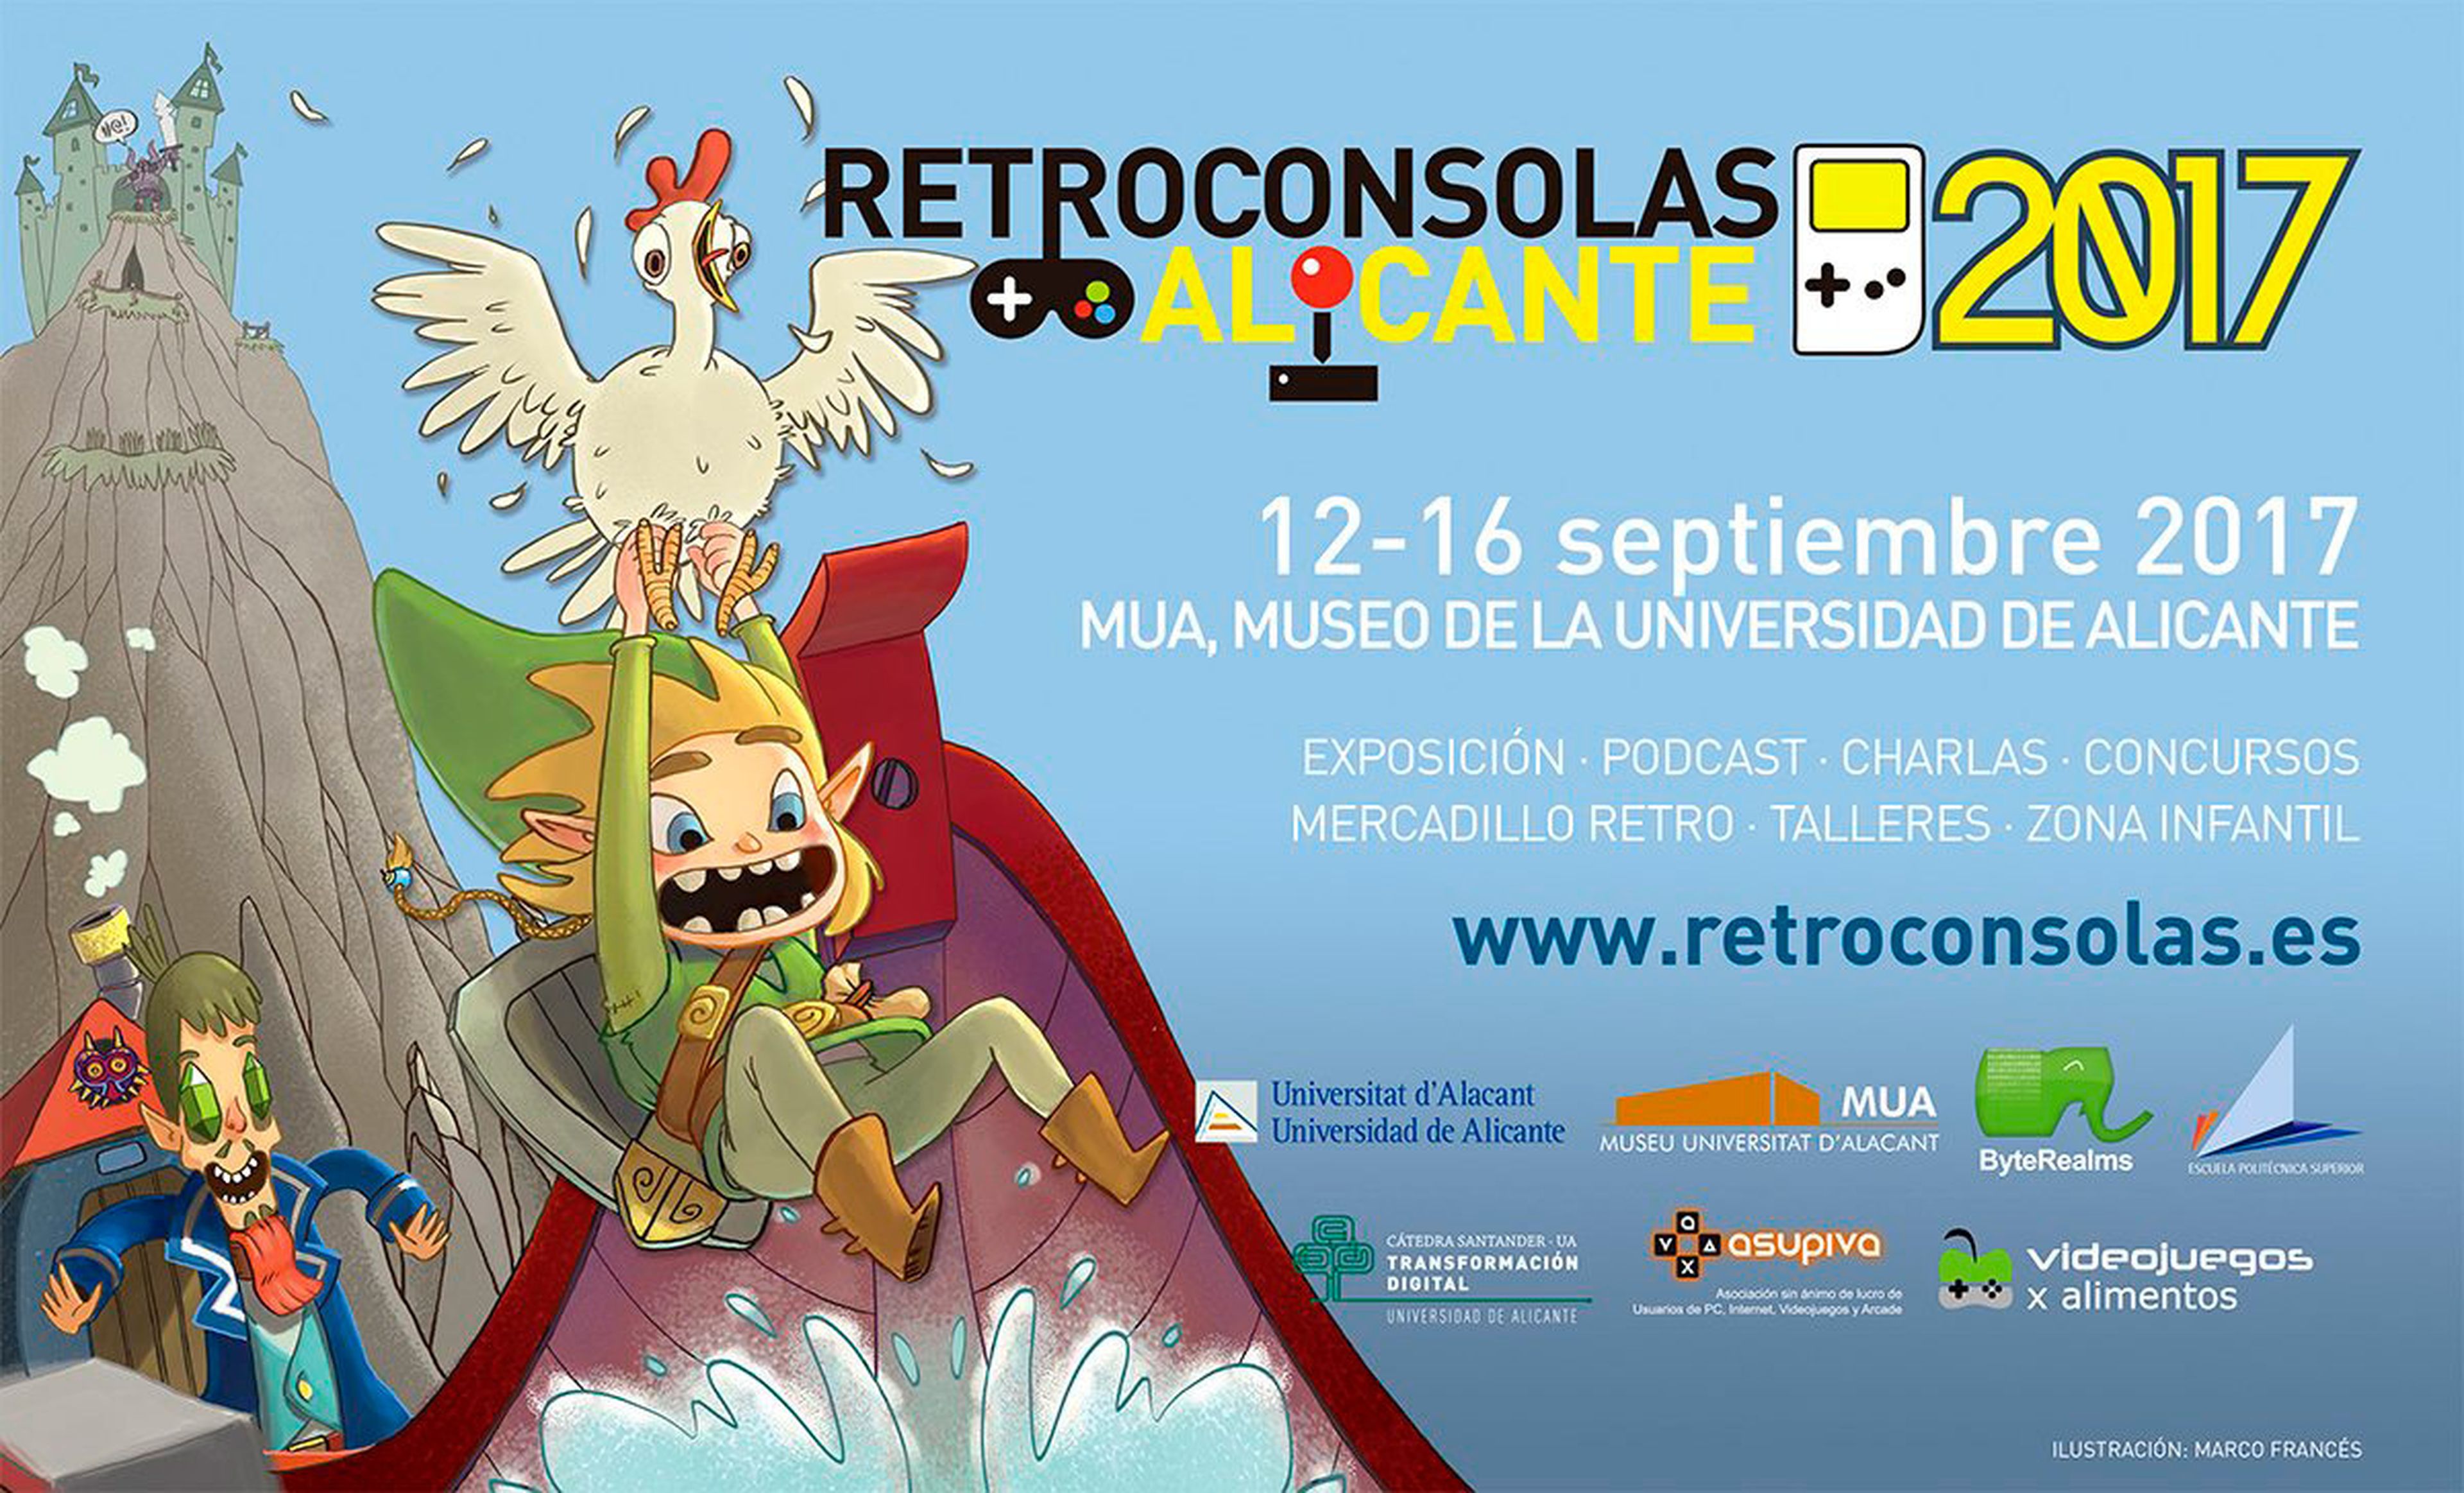 Retroconsolas Alicante 2017 - Cartel